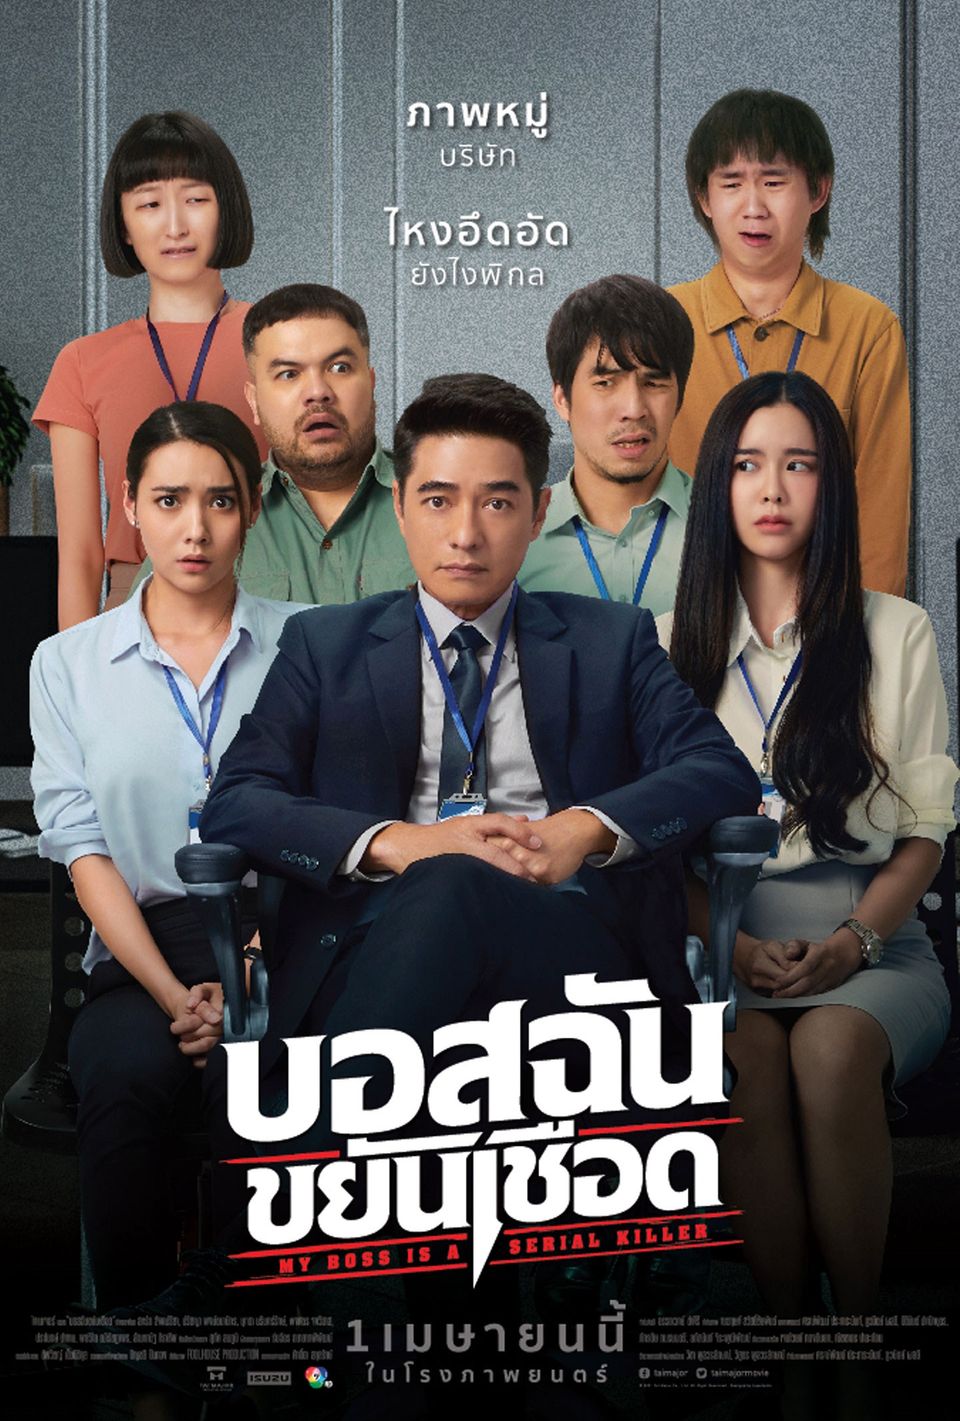 ภาพยนตร์ไทย “บอสฉันขยันเชือด” (MY BOSS IS A SERIAL KILLER)